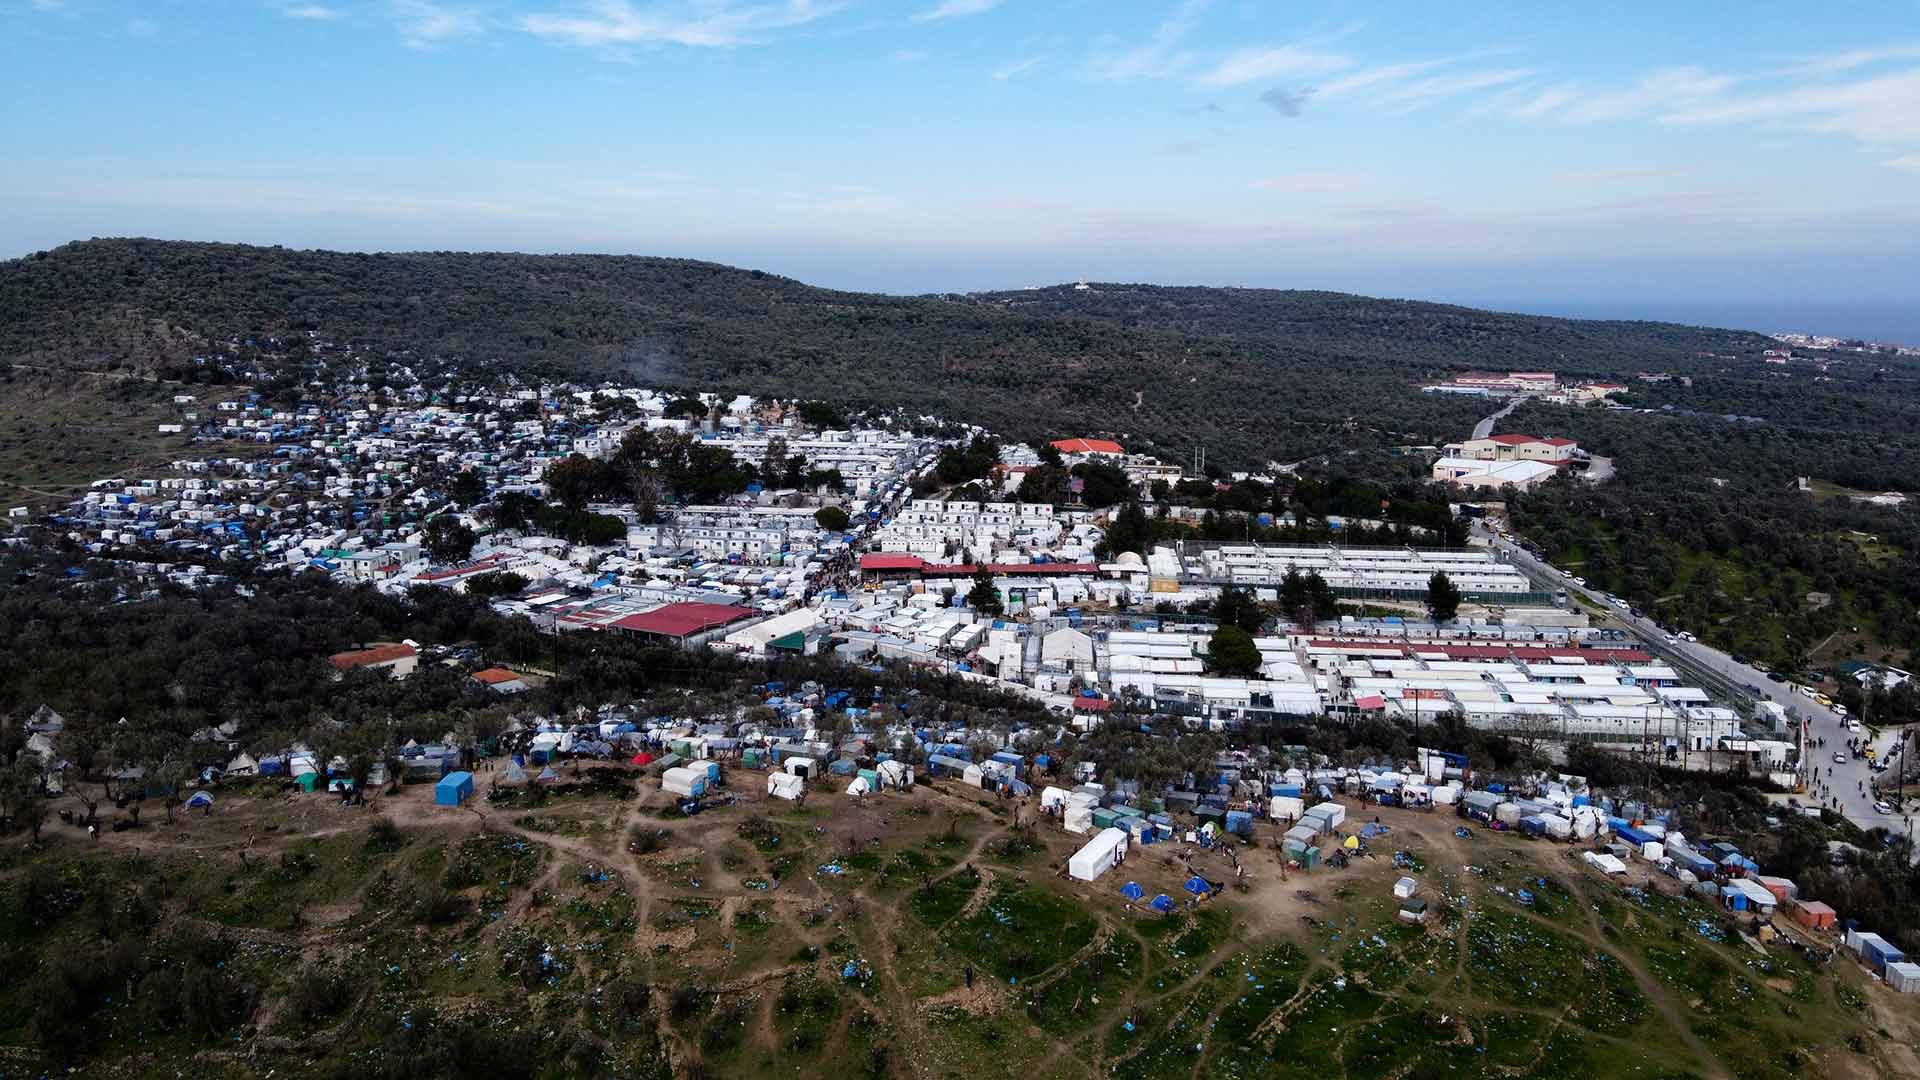 Vivir atrapados: el futuro de los migrantes y refugiados que quieren entrar en Grecia desde Turquía 1